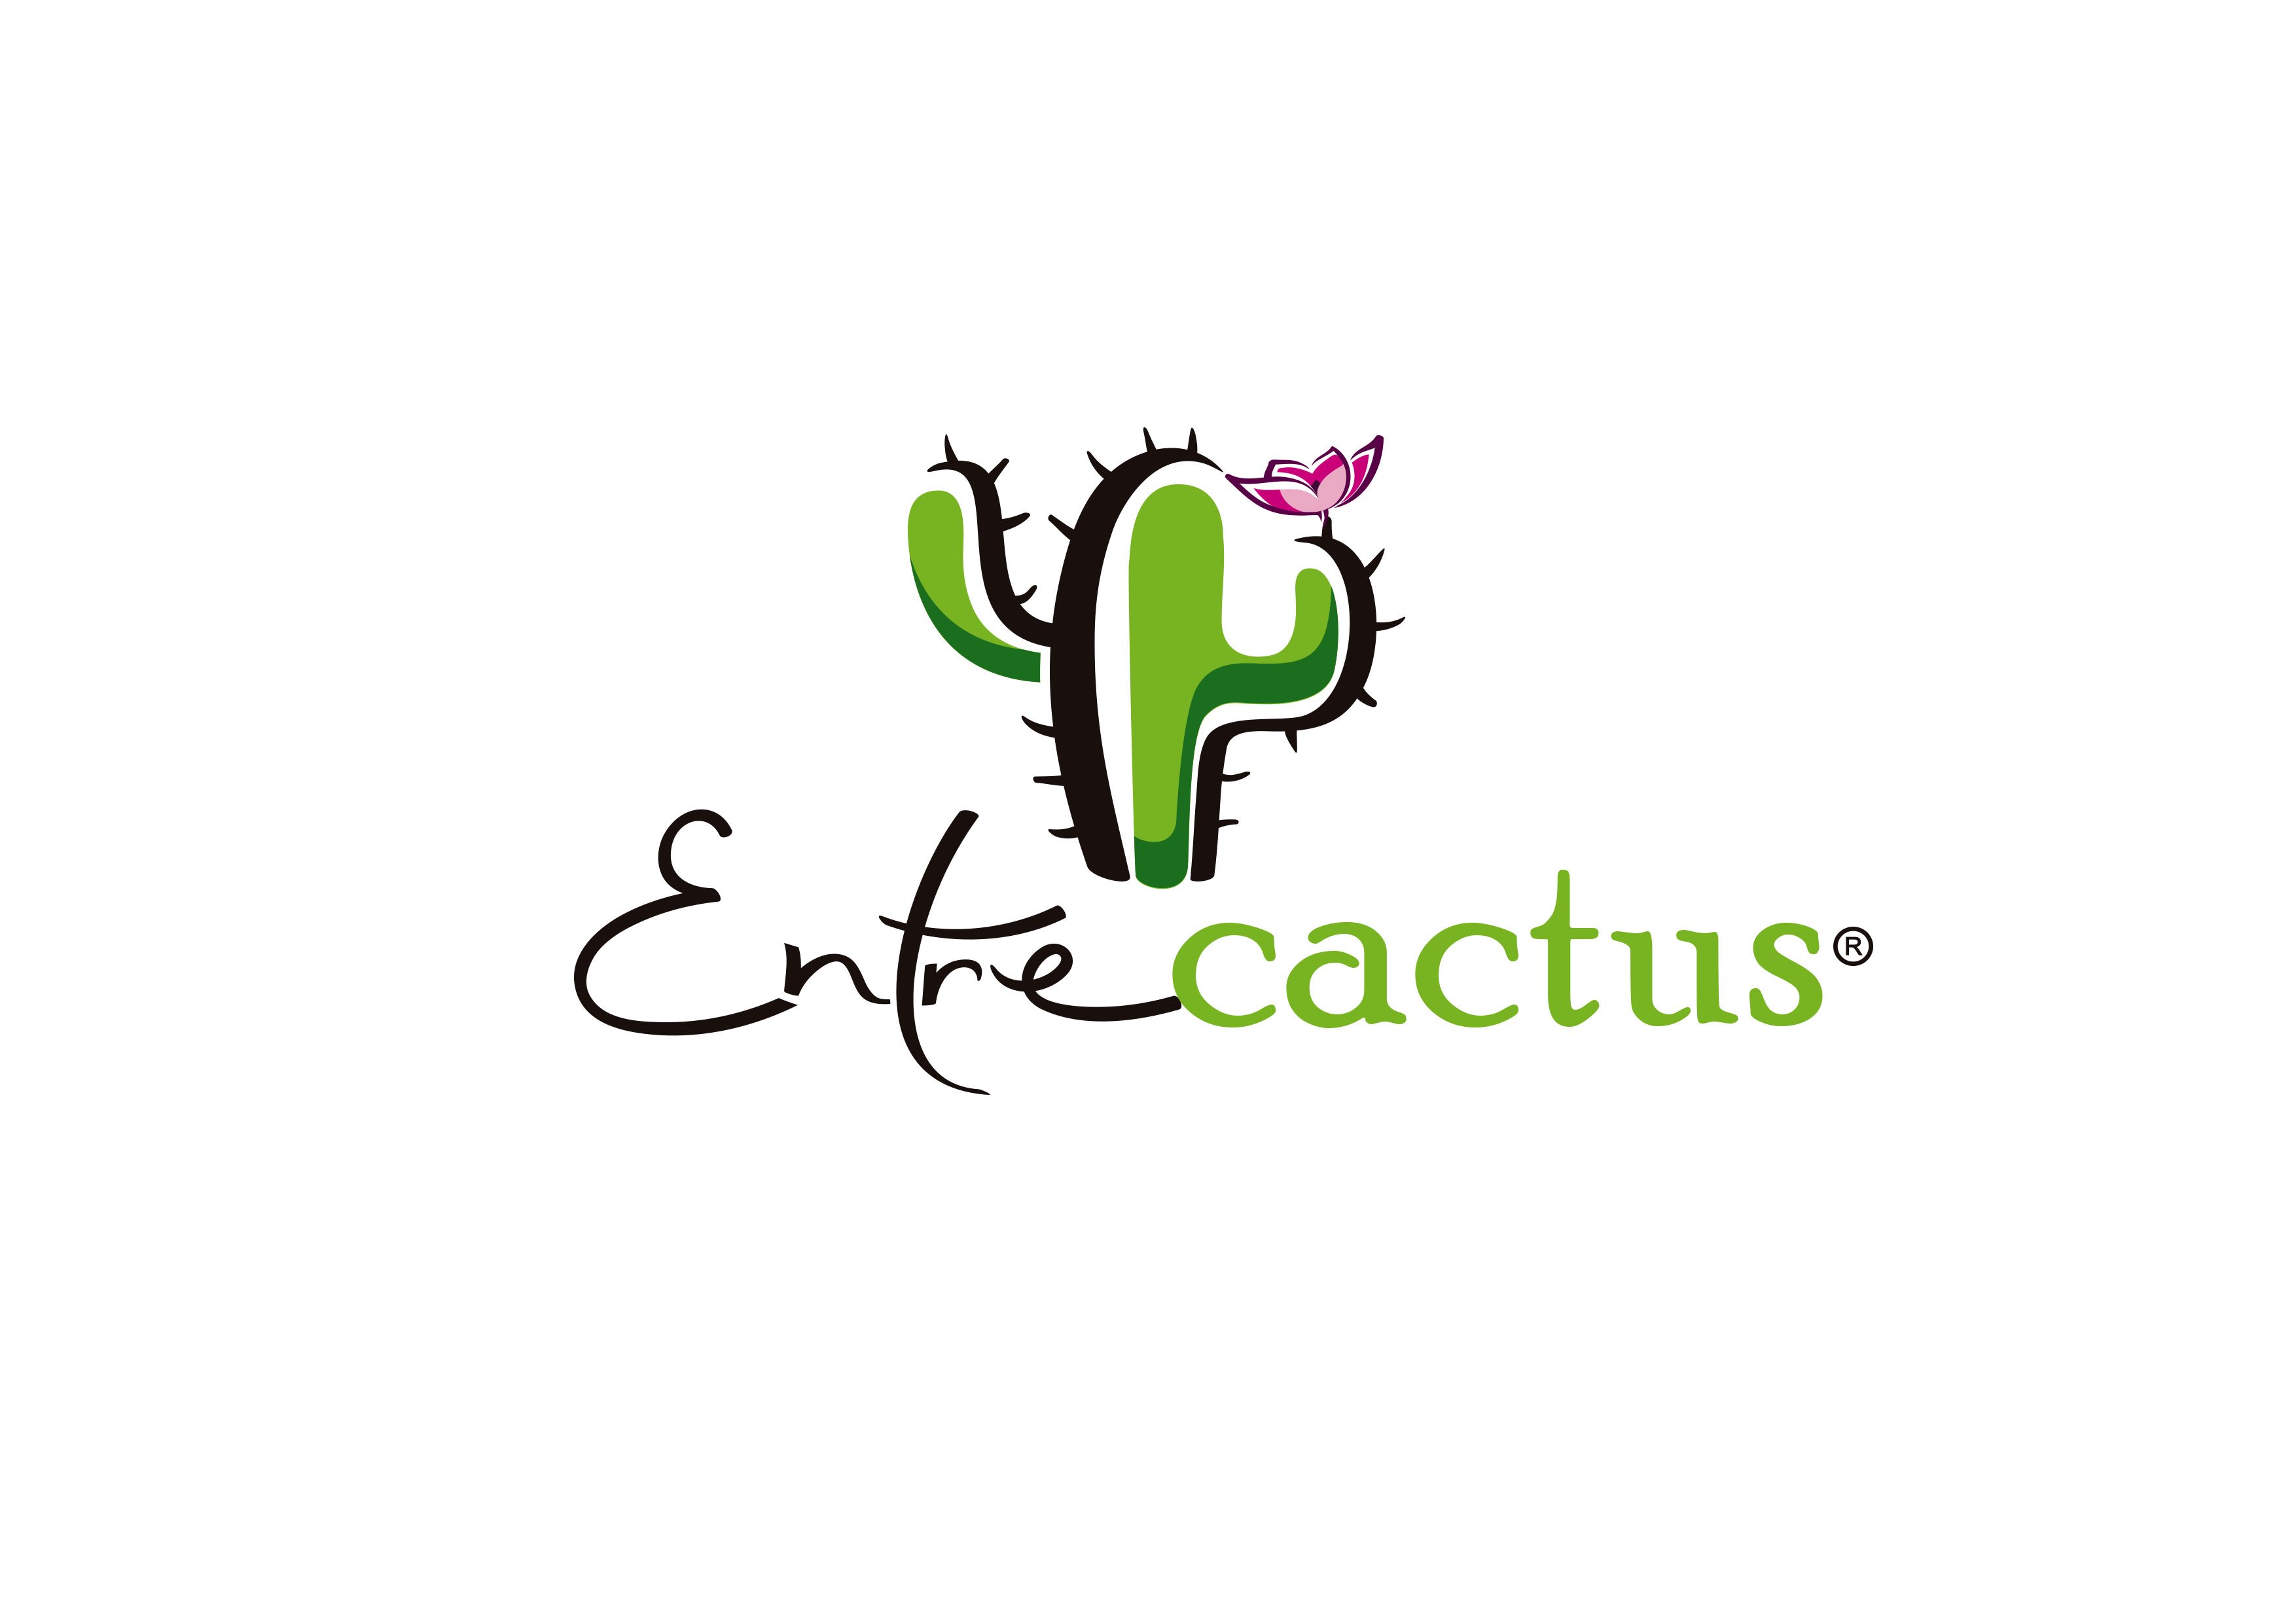 Nos gustan los cactus